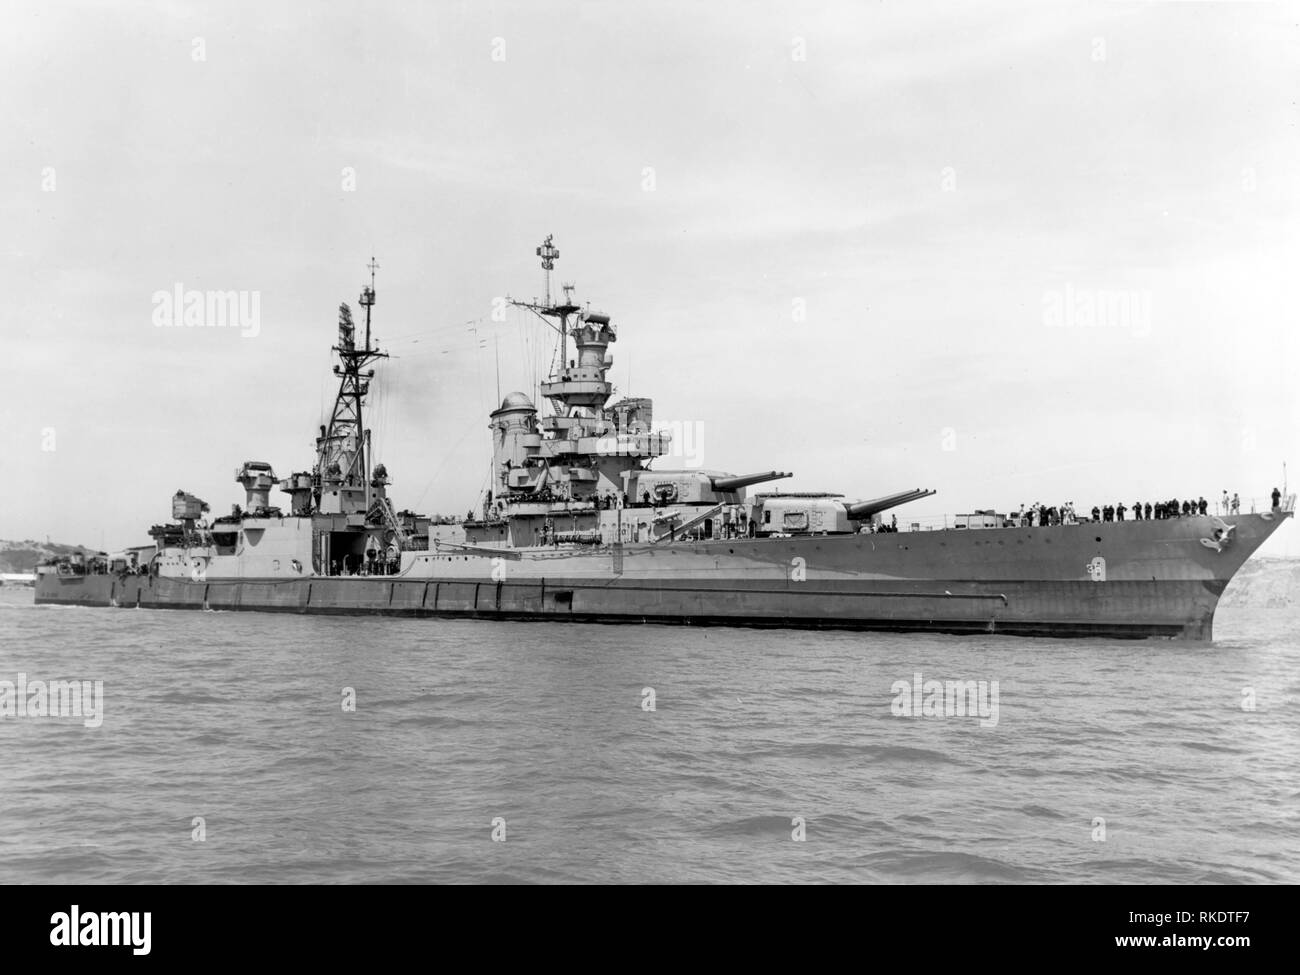 Die US-Marine schwere Kreuzer USS Indianapolis (CA-35) von der Mare Island Naval Shipyard, Kalifornien (USA), am 10. Juli 1945, nach der letzten Überholung und Reparatur von kampfschaden. Das Foto wurde aufgenommen, bevor das Schiff Atombombe Komponenten auf Tinian und nur 20 Tagen ausgeliefert, bevor sie von einem japanischen U-Boot versenkt wurde. Stockfoto